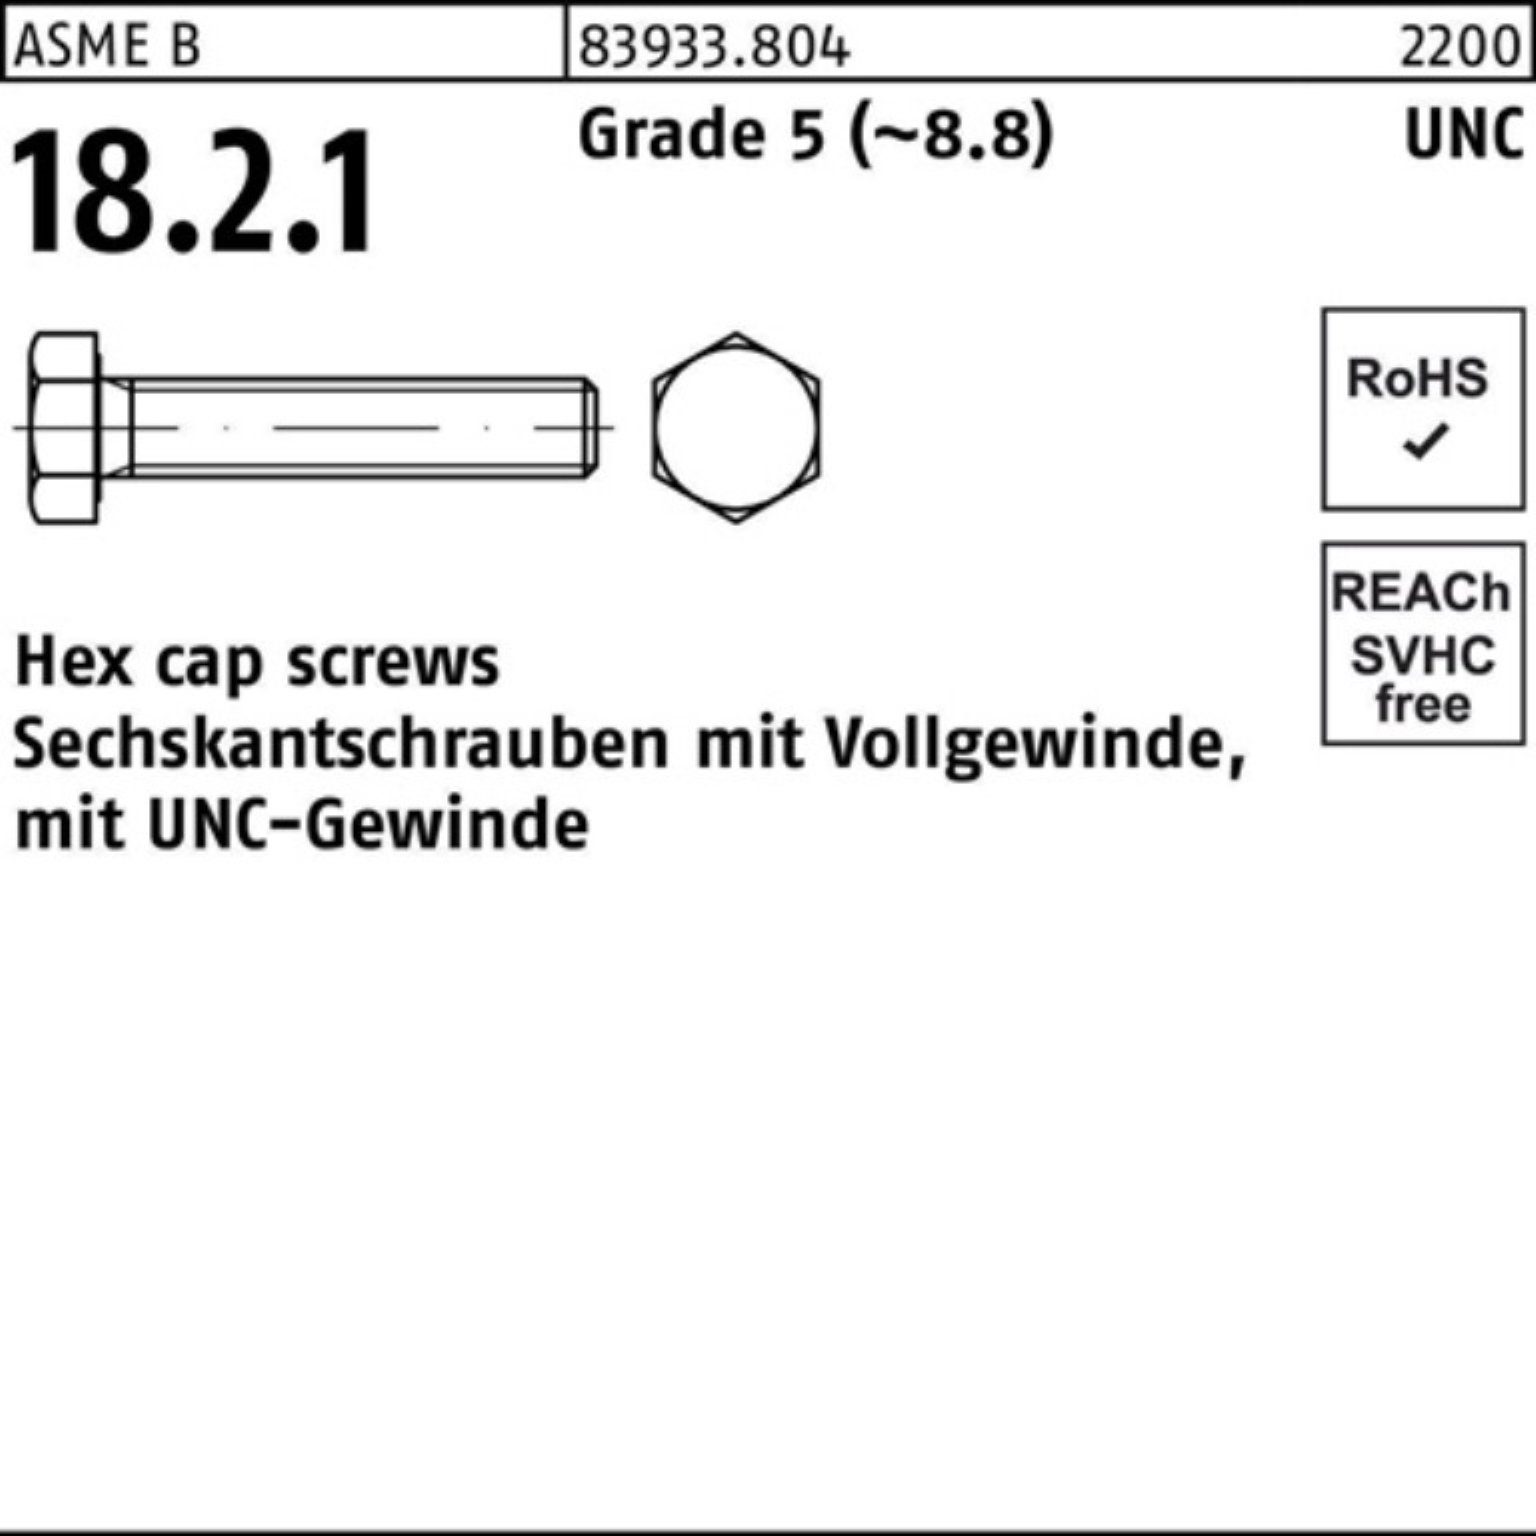 Sechskantschraube UNC-Gewinde VG 83933 R 3/4 Pack 5/16x Reyher 100er Sechskantschraube Grade 5